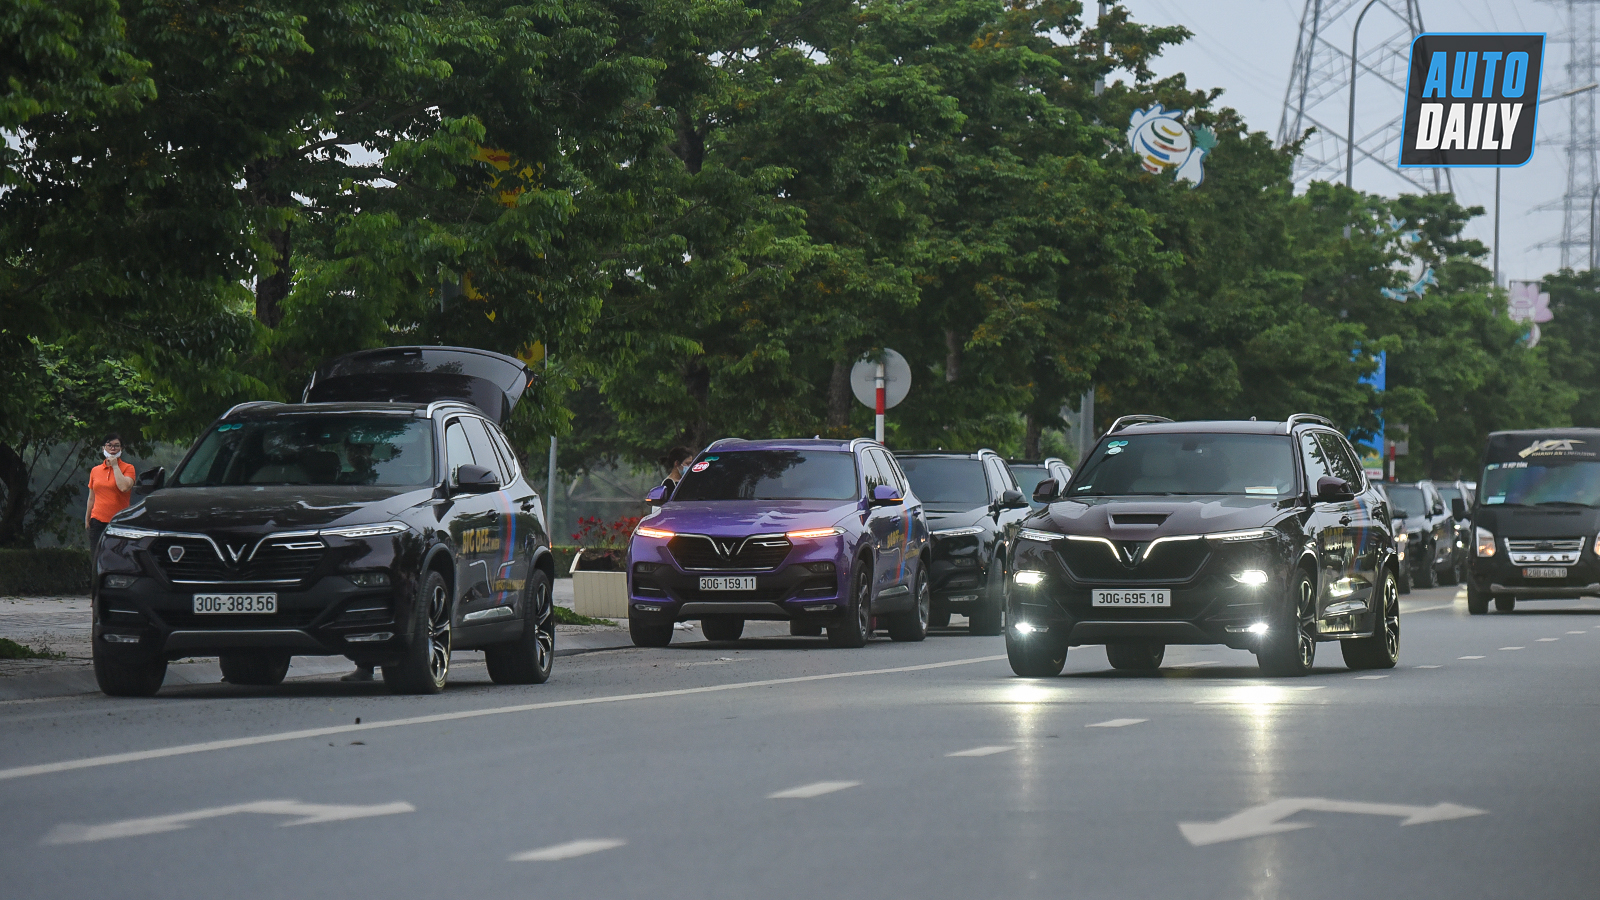 Chùm ảnh gần 60 xe VinFast Lux tại Hà Nội xuất phát Offline 3 miền tại Hội An dsc-6019-copy.jpg